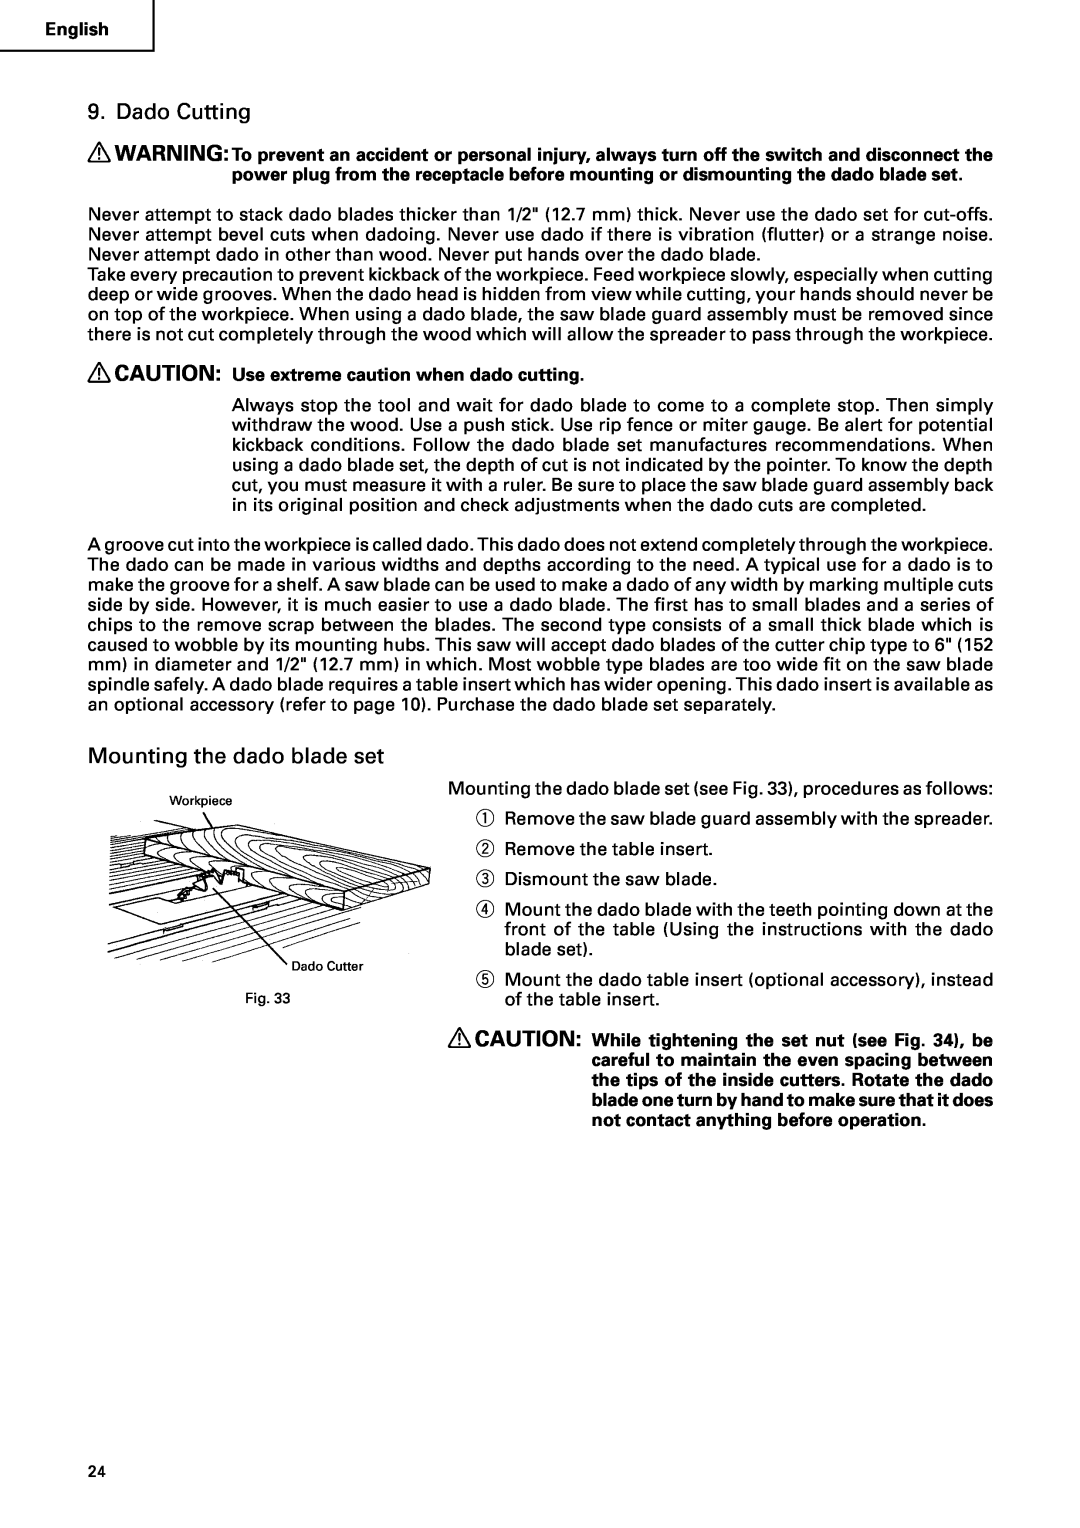 Hitachi C10RA2 instruction manual Dado Cutting, Mounting the dado blade set 